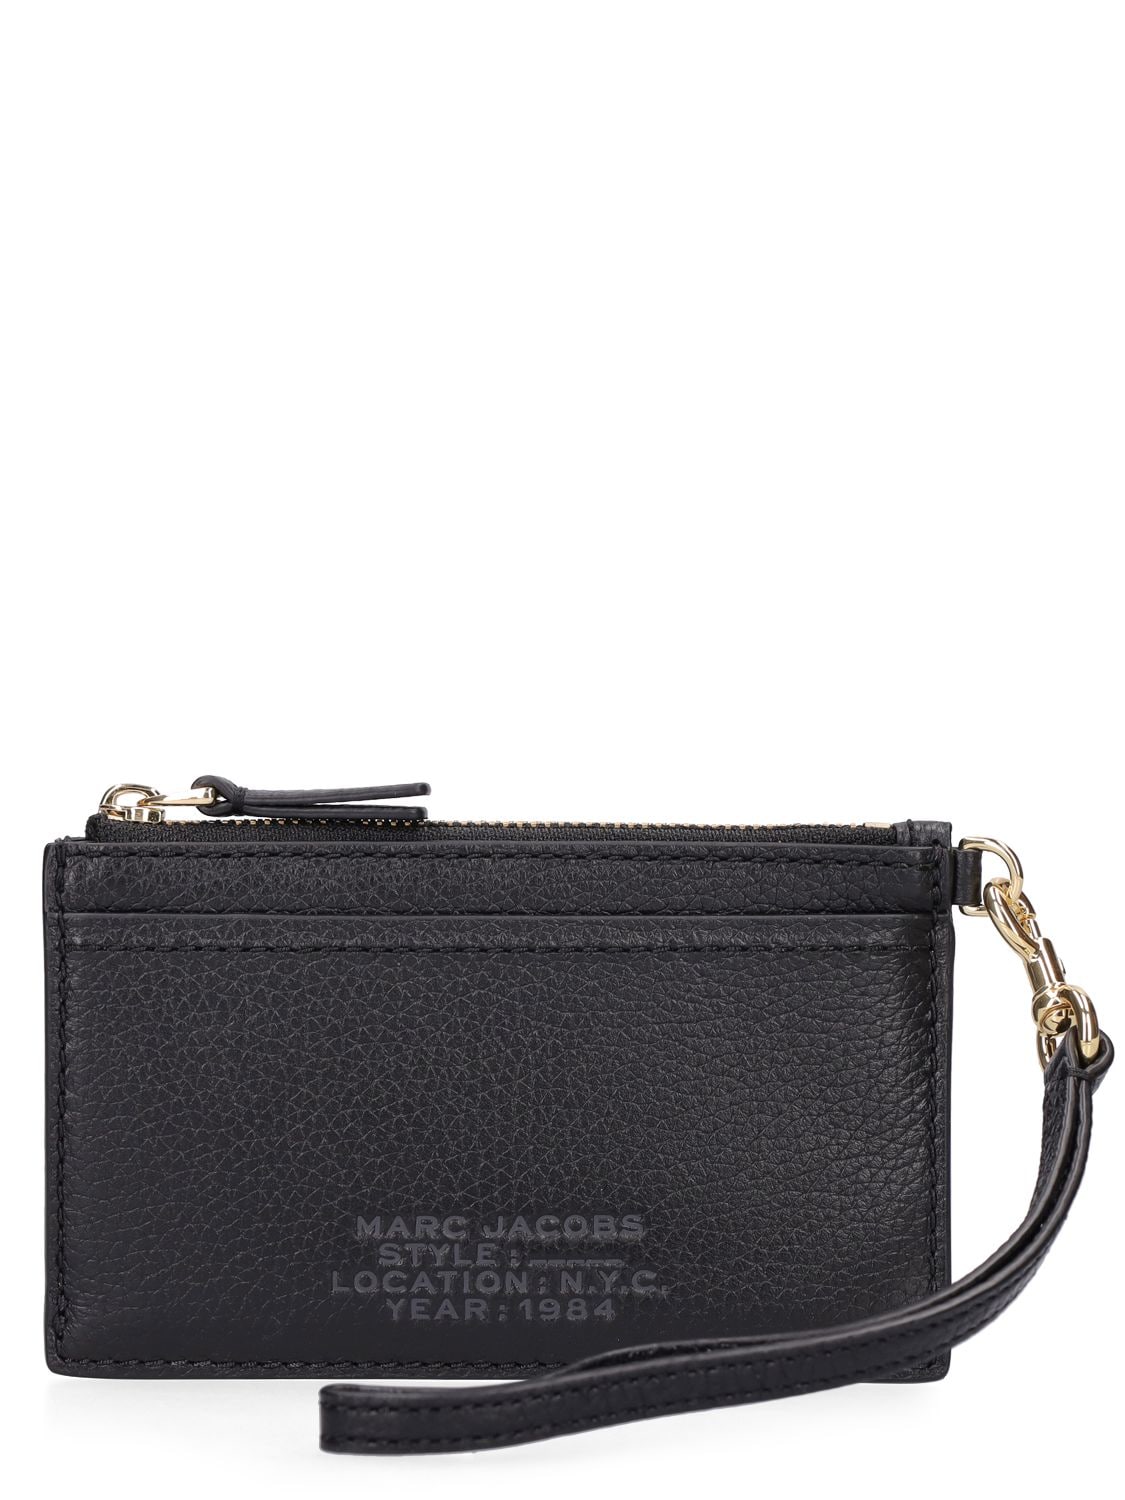 Marc Jacobs Top Zip Wrist Wallet In Black